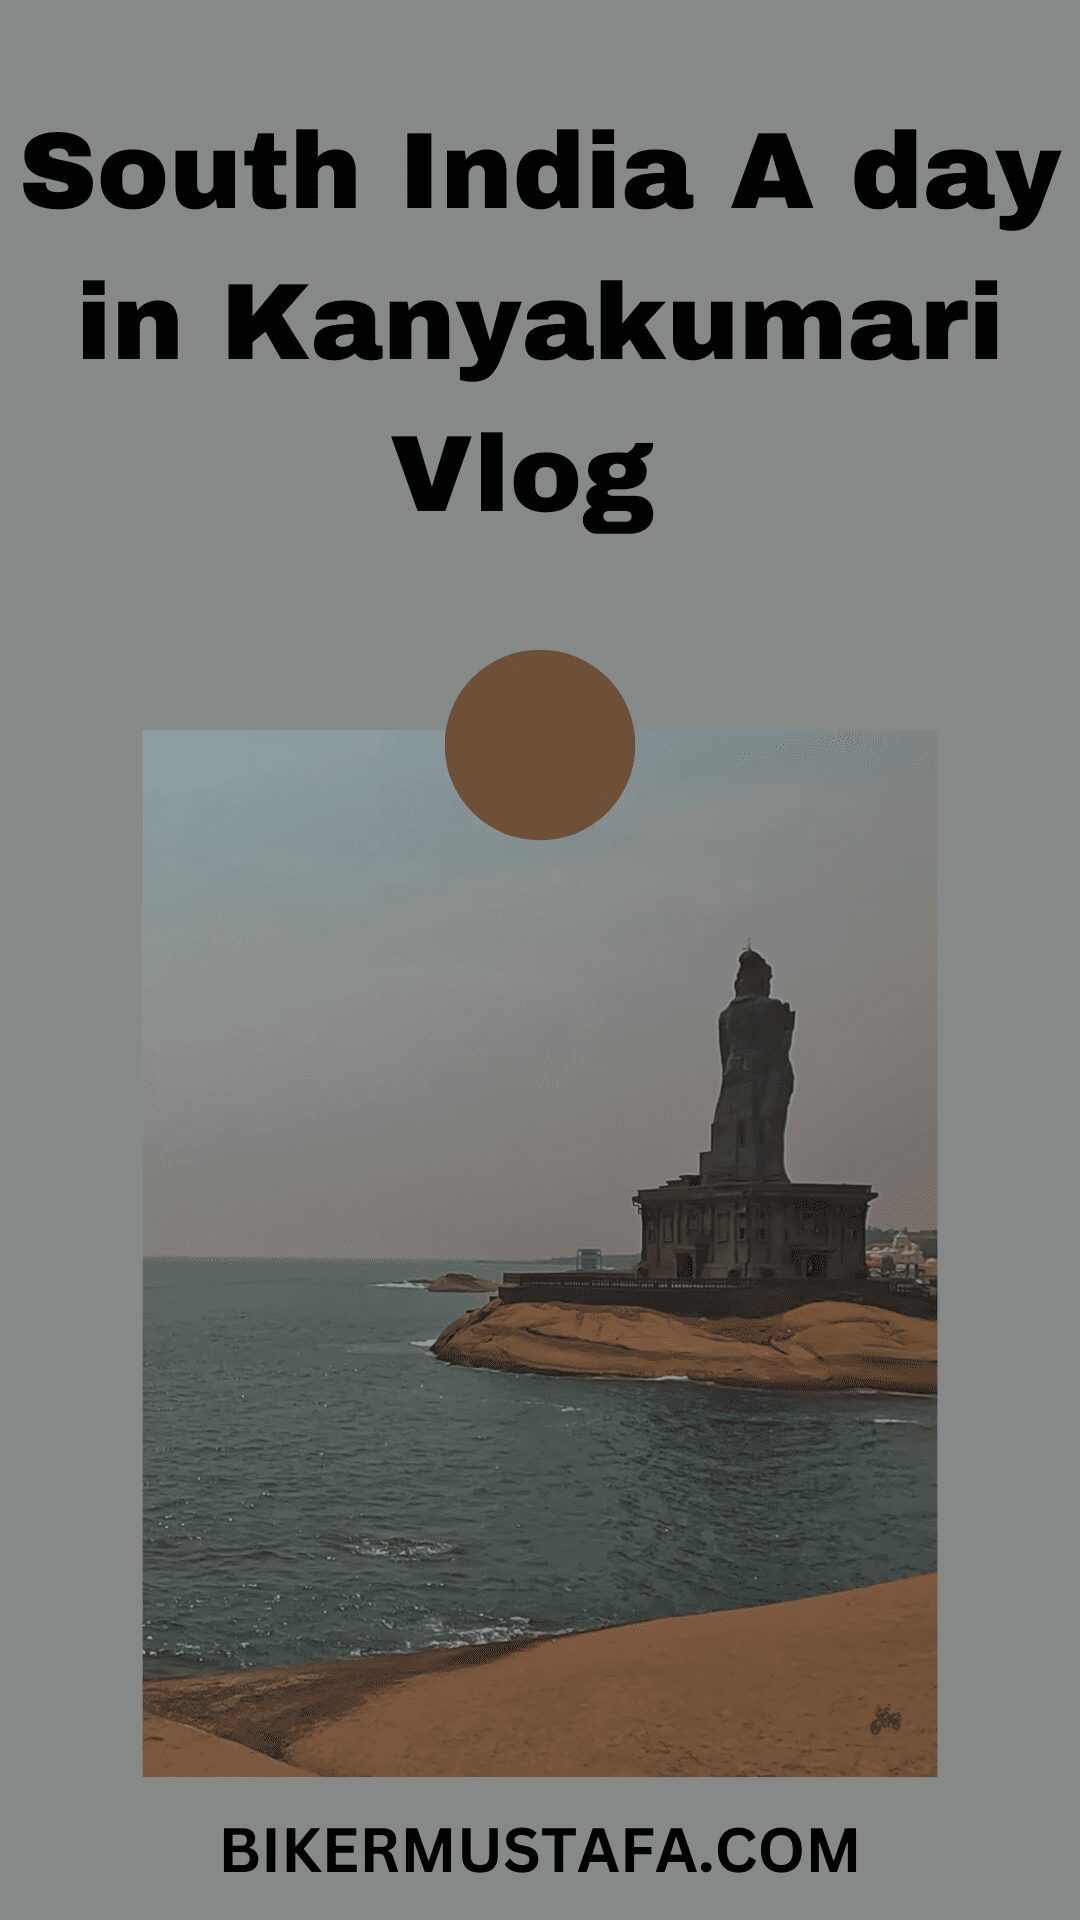 South India A day in Kanyakumari Vlog